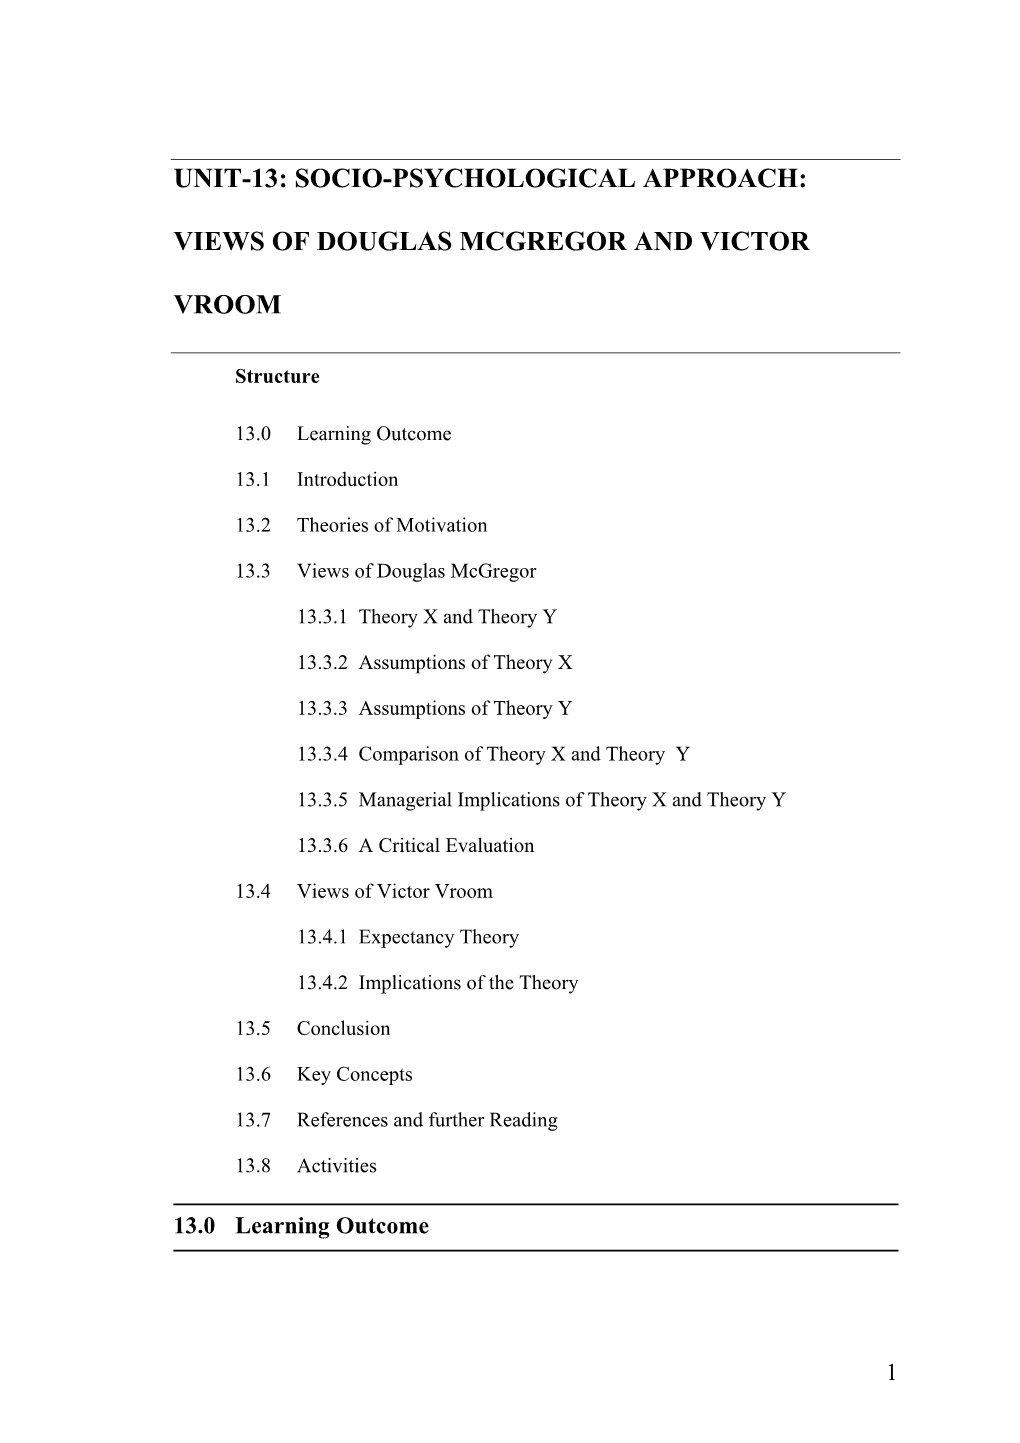 Unit-13: Views of Doughlas Mcgregar and Victor Vroom